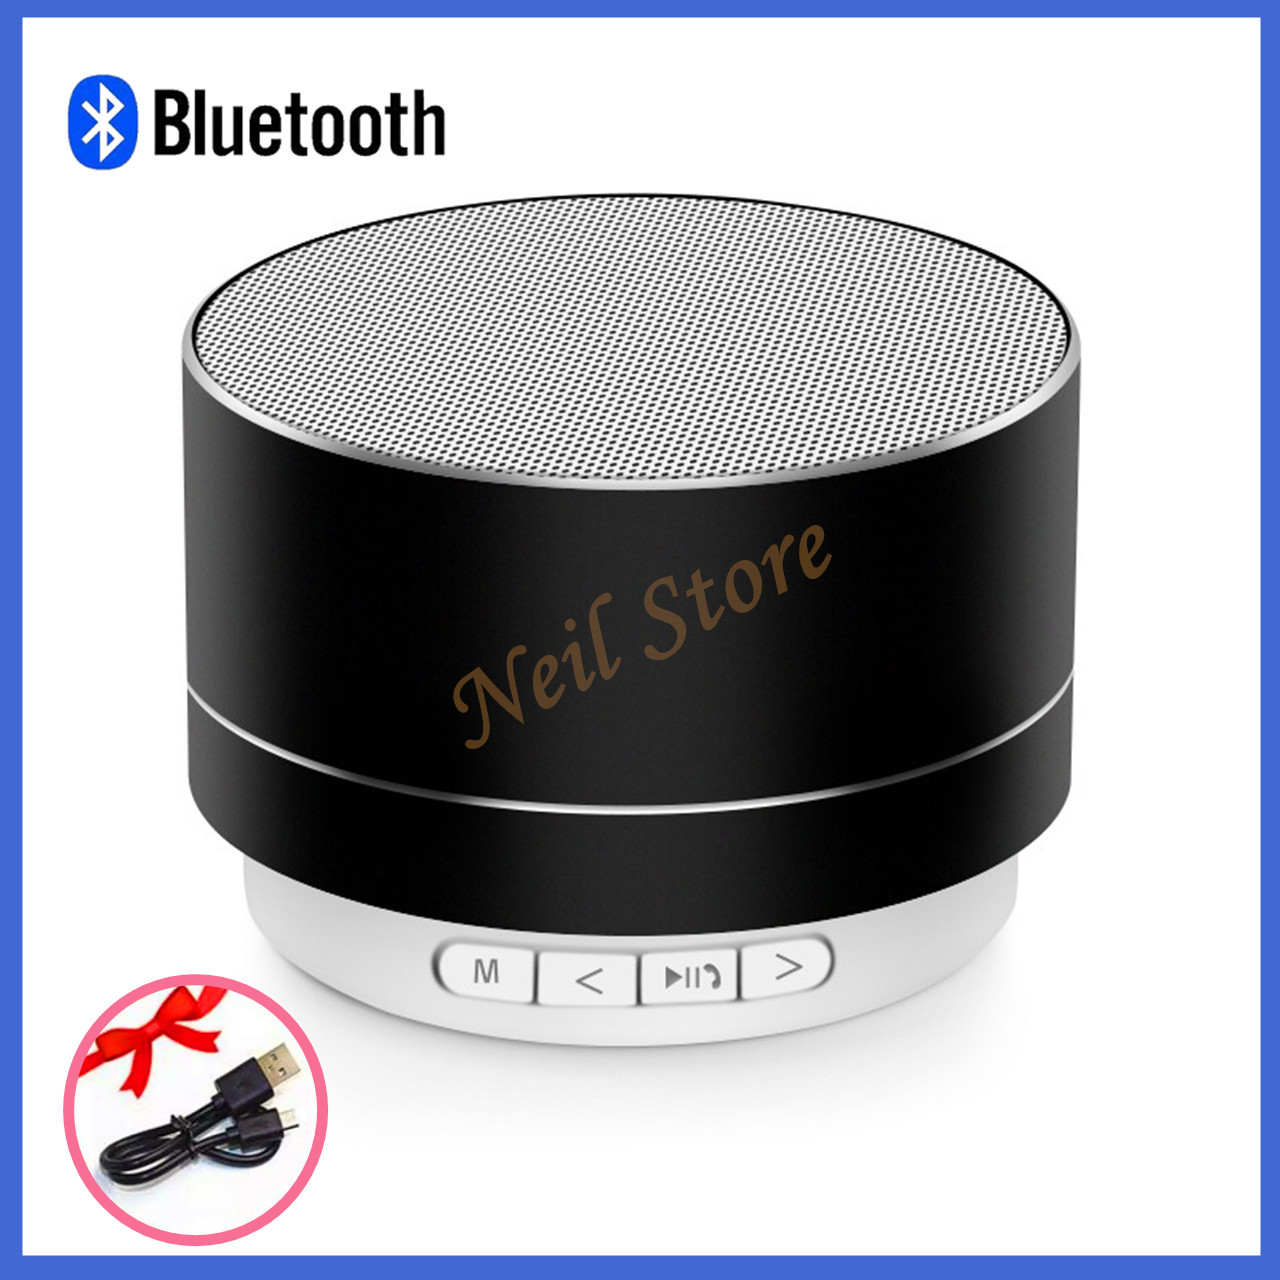 ลำโพงบลูทู ธ ไร้สาย Mini Metal Bluetooth Speaker Handsfree Subwoofer WirelessA10 ลำโพงบลูทูธโลหะลำโพงซับวูฟเฟอร์ไร้สายเพลงไร้สายสนับสนุนกล่องเสียง Micro SD/TF Card เครื่องเล่นเสียง